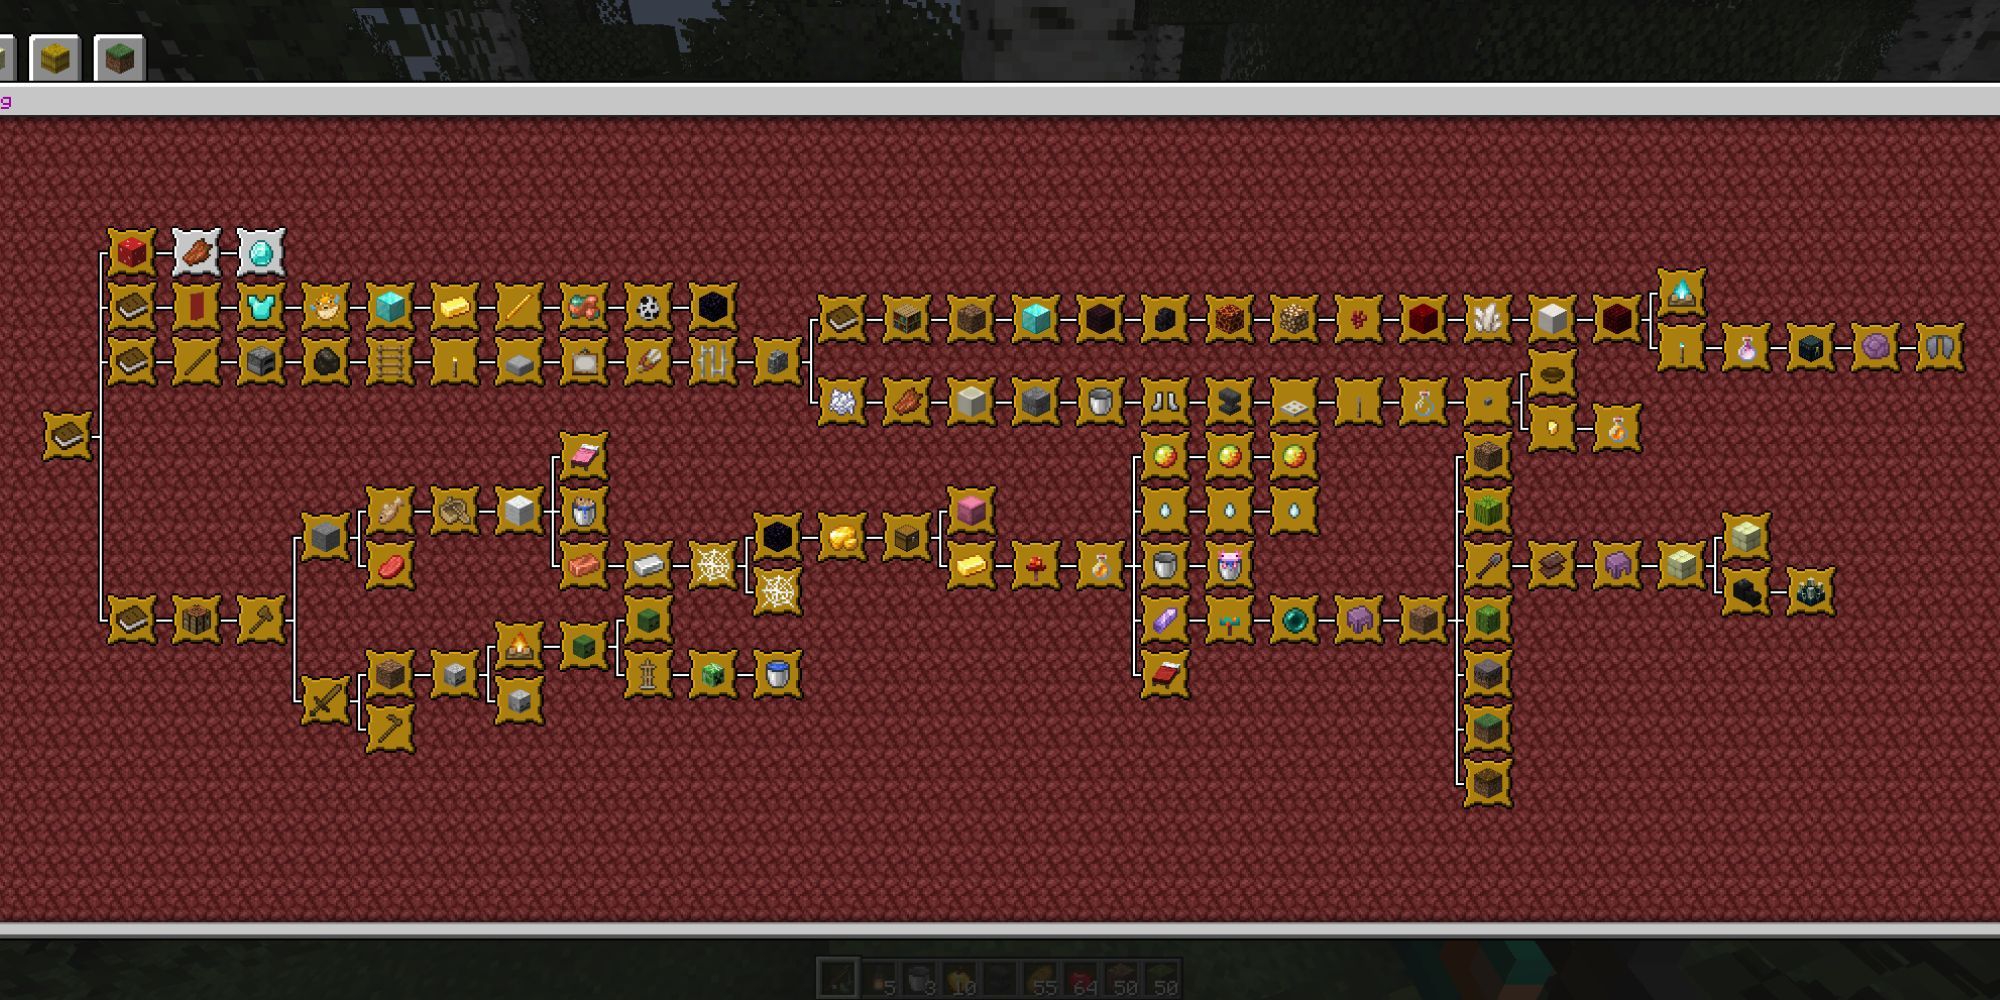 Eine benutzerdefinierte Benutzeroberfläche für Minecraft-Erfolge, die eine Reihe von Zielen auf einem dunkelroten Hintergrund zeigt.